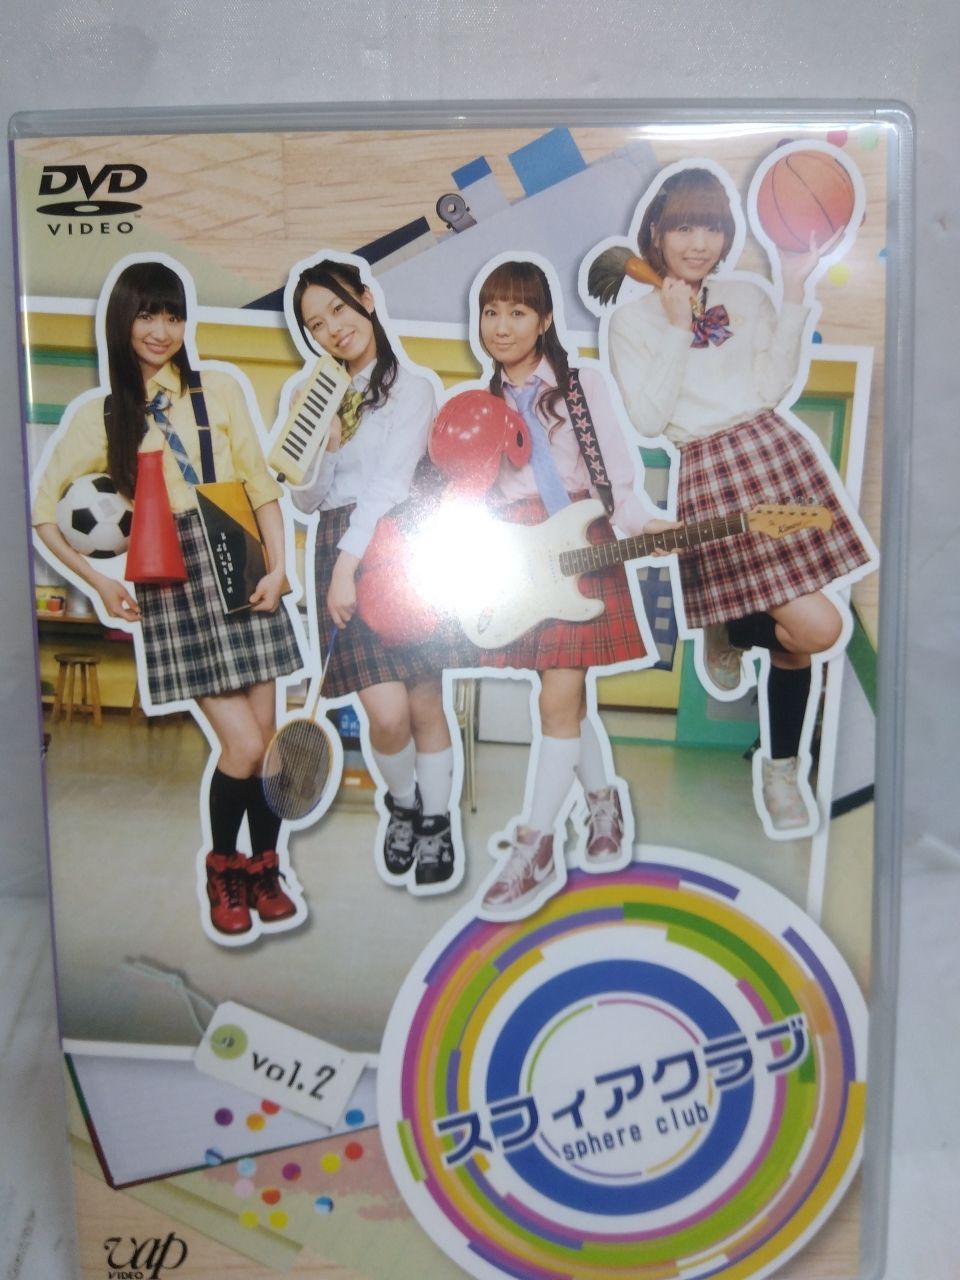 5-4 スフィアクラブ VOL.2 DVD - メルカリ